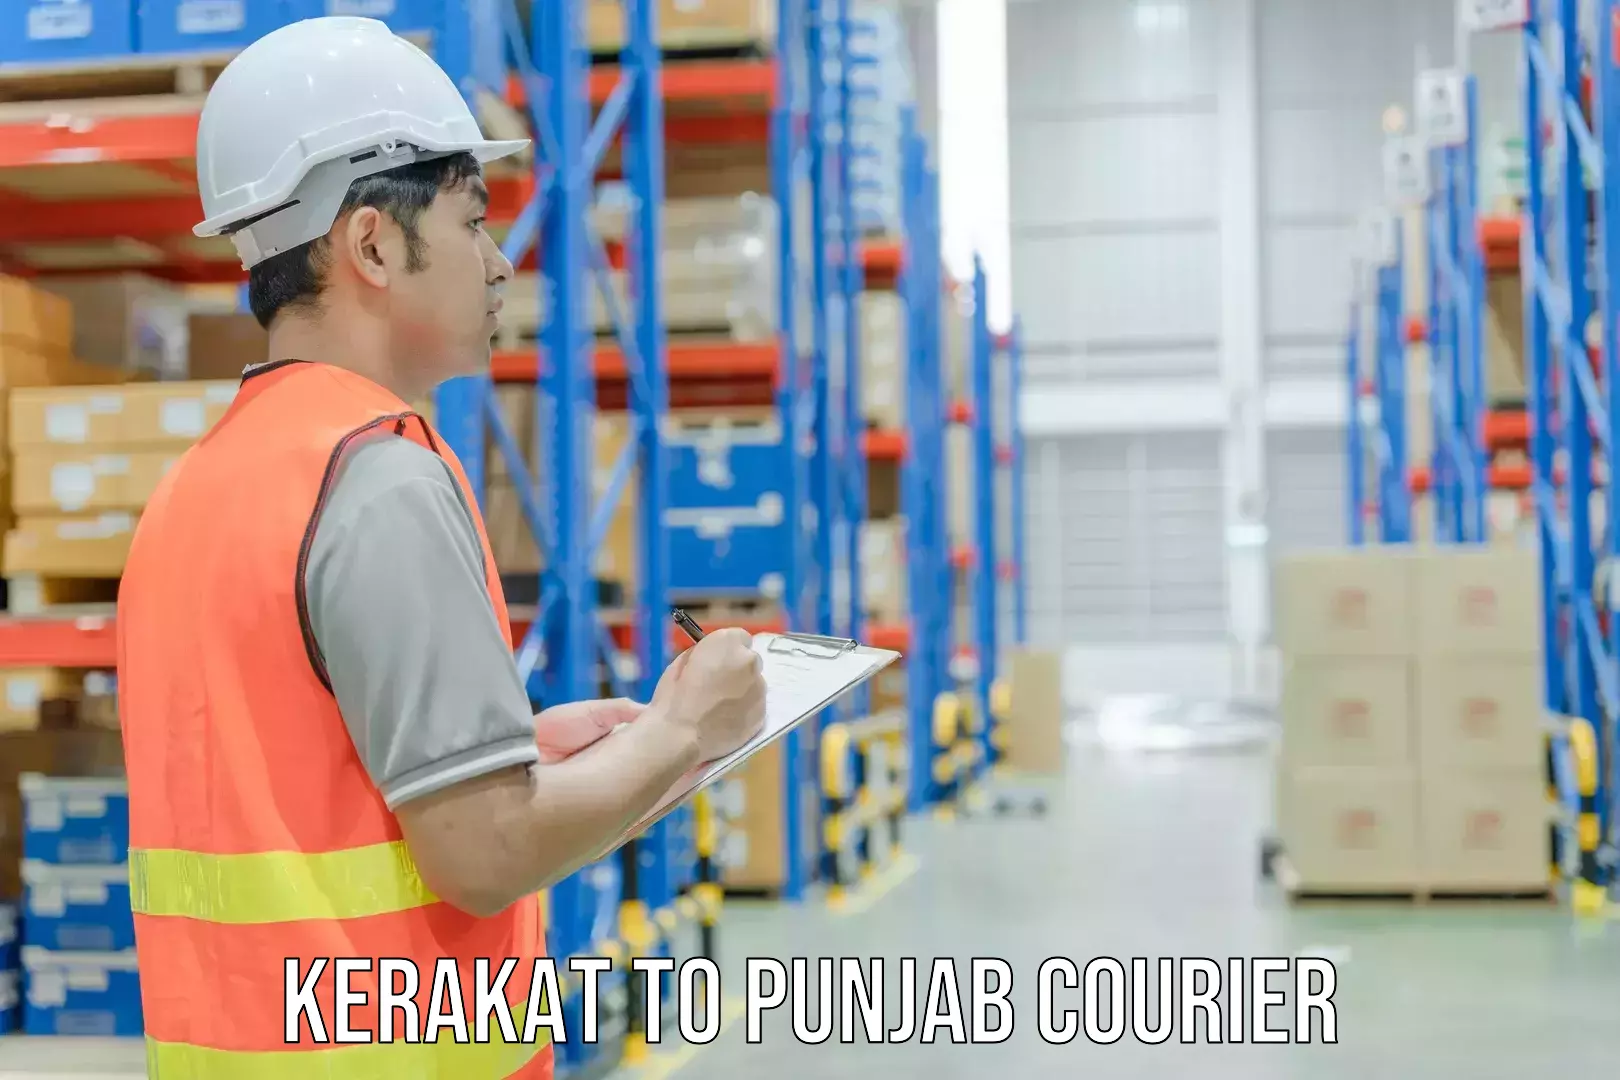 Weekend courier service Kerakat to Punjab